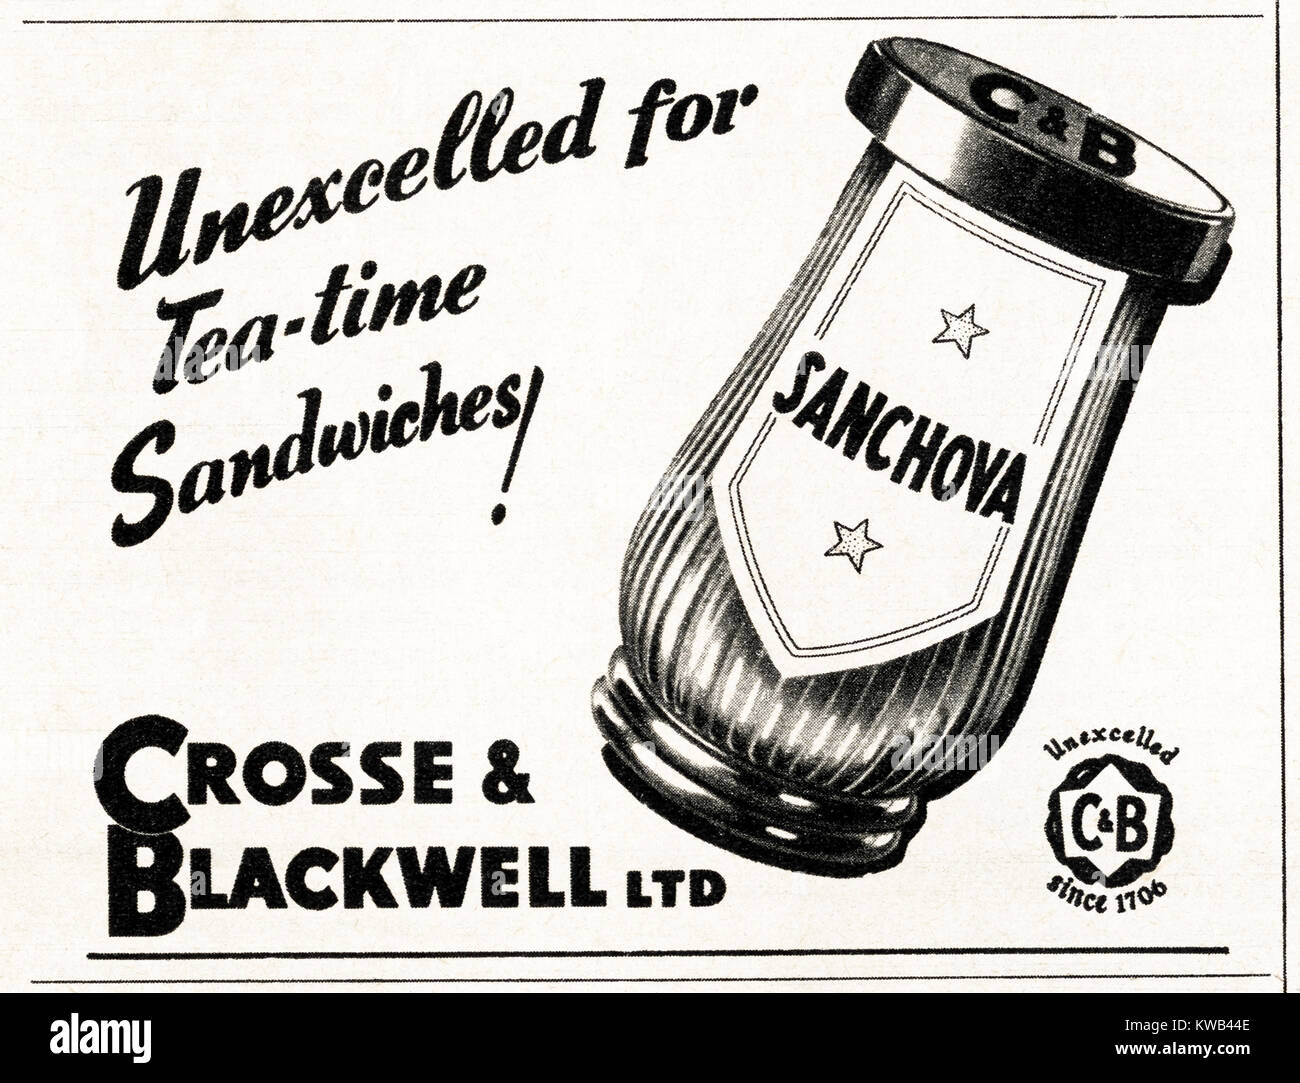 1940er Jahre alten Vintage original advert Werbung Crosse & Blackwell Sanchova Brotaufstrich im Magazin ca. 1947 wenn Verbrauchsmaterialien wurden noch in der Nachkriegszeit rationierung eingeschränkt Stockfoto